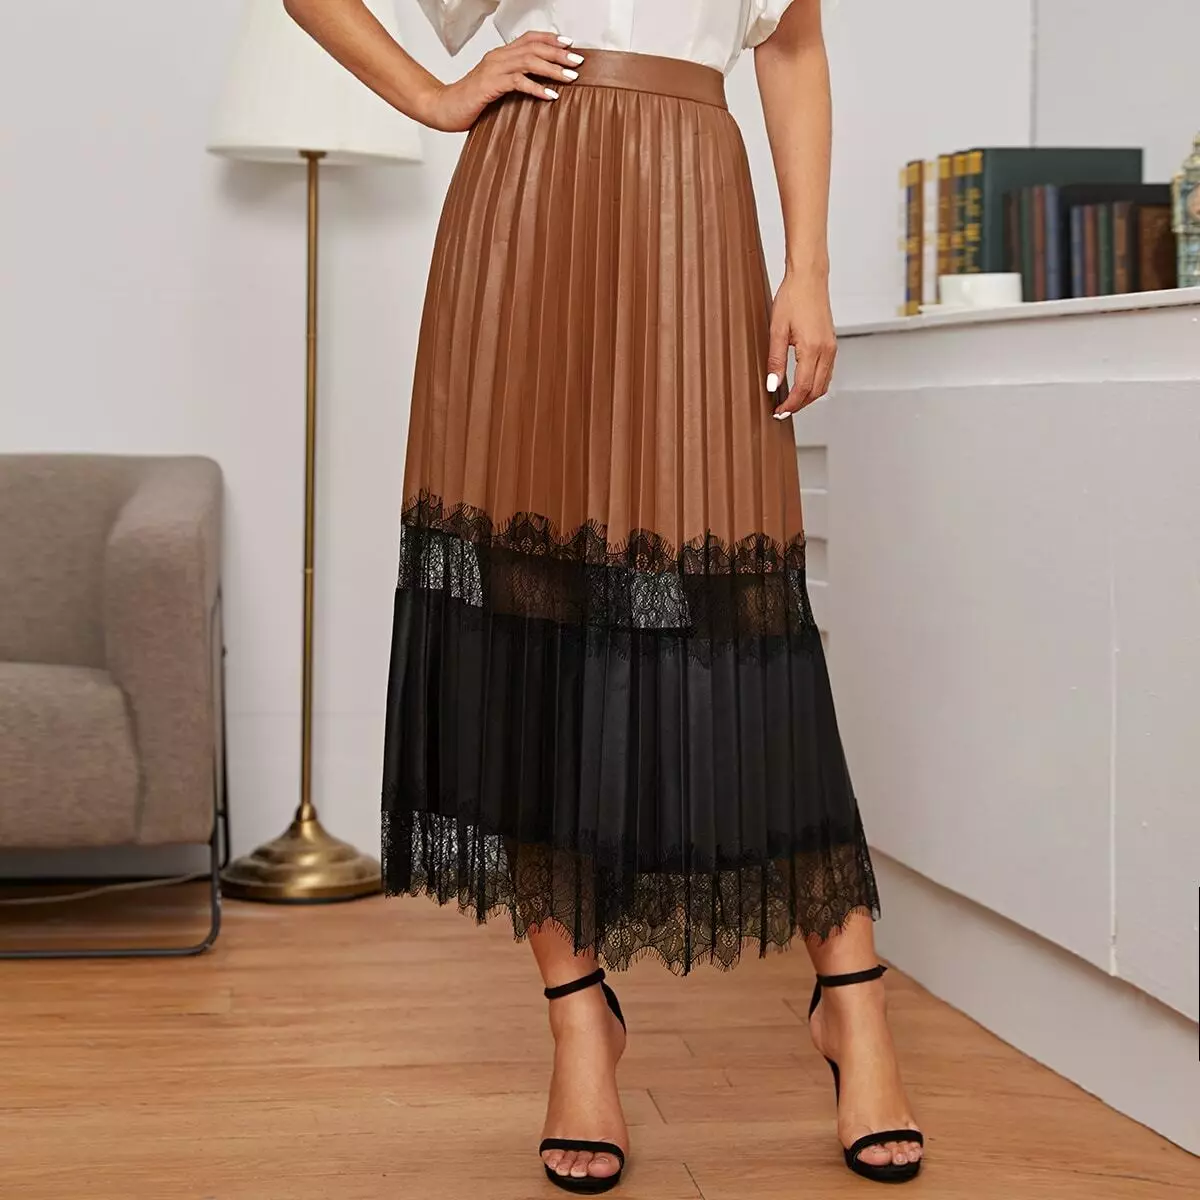 Plays चमड़े के स्कर्ट: Pleated इको-टुकड़ा स्कर्ट पहनने के लिए क्या? काले और भूरे रंग की कृत्रिम त्वचा स्कर्ट वाली छवियां 800_18